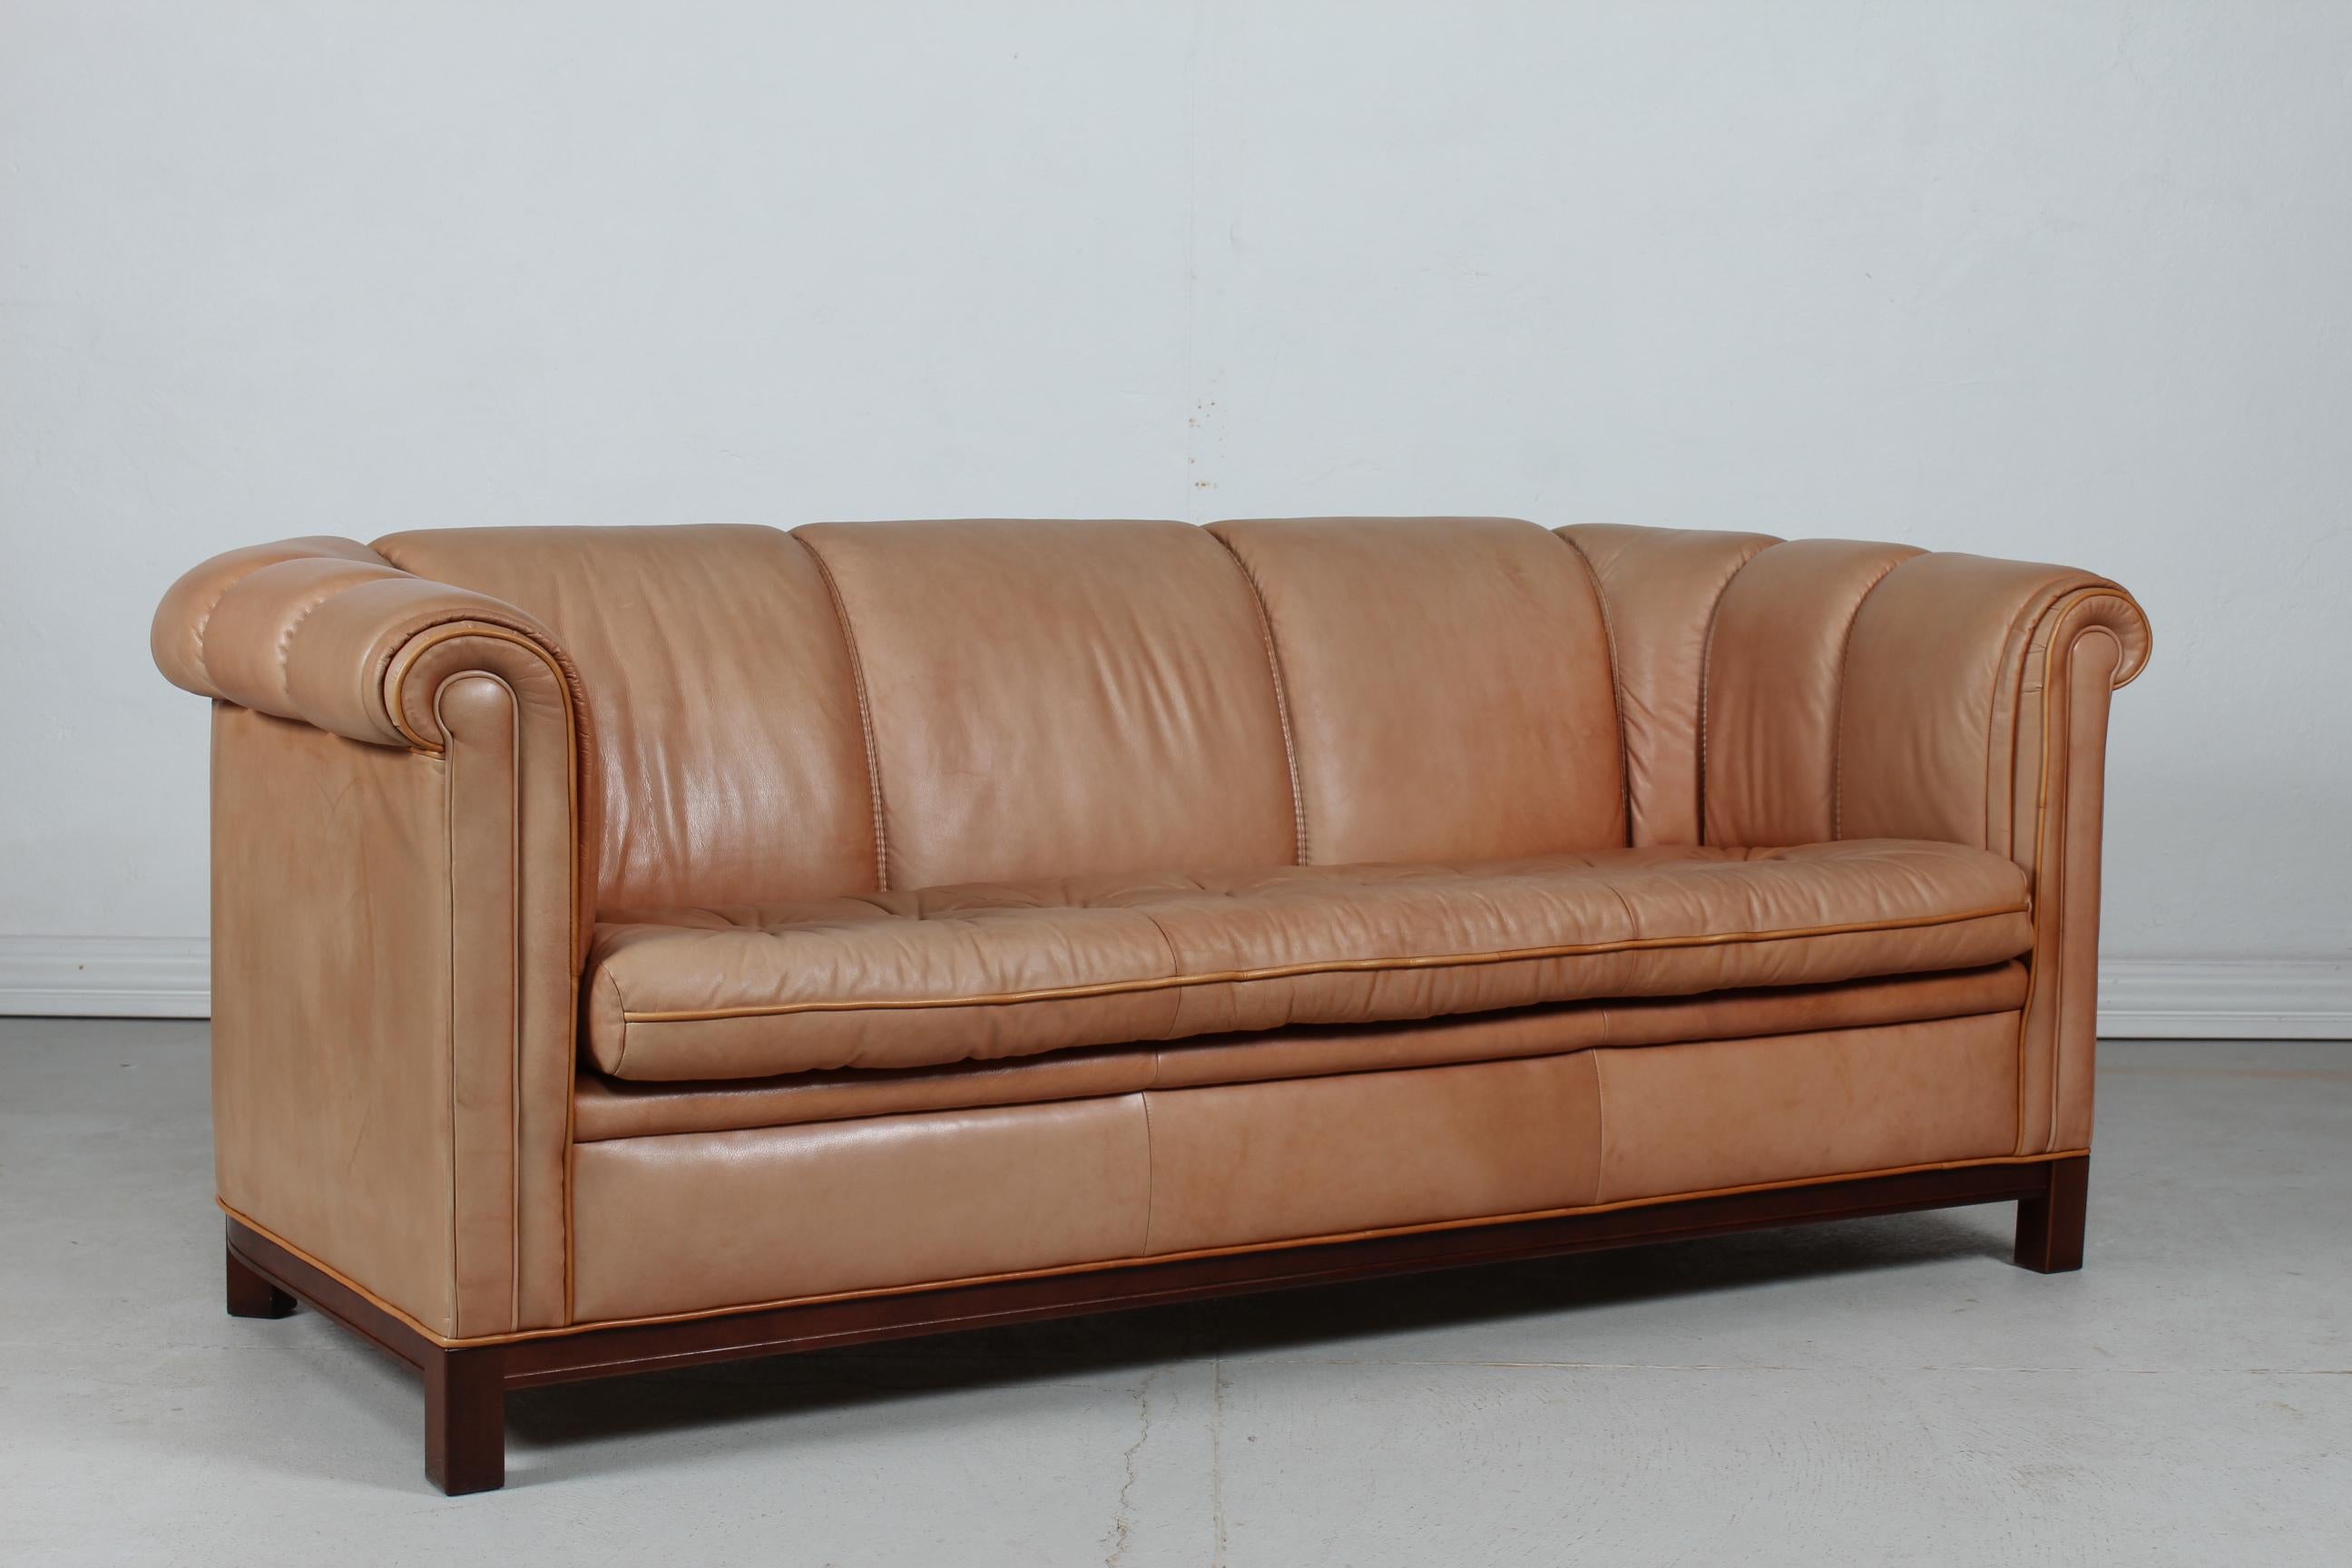 Vintage 3-Sitz Chesterfield Sofa aus den 1970er Jahren.
Er ist mit feinem und hochwertigem cognacfarbenem Leder gepolstert. Der Rahmen ist aus Mahagoniholz gefertigt.

Das Sofa ist in gutem Vintage-Zustand mit Patina von Sonnenlicht und sanftem